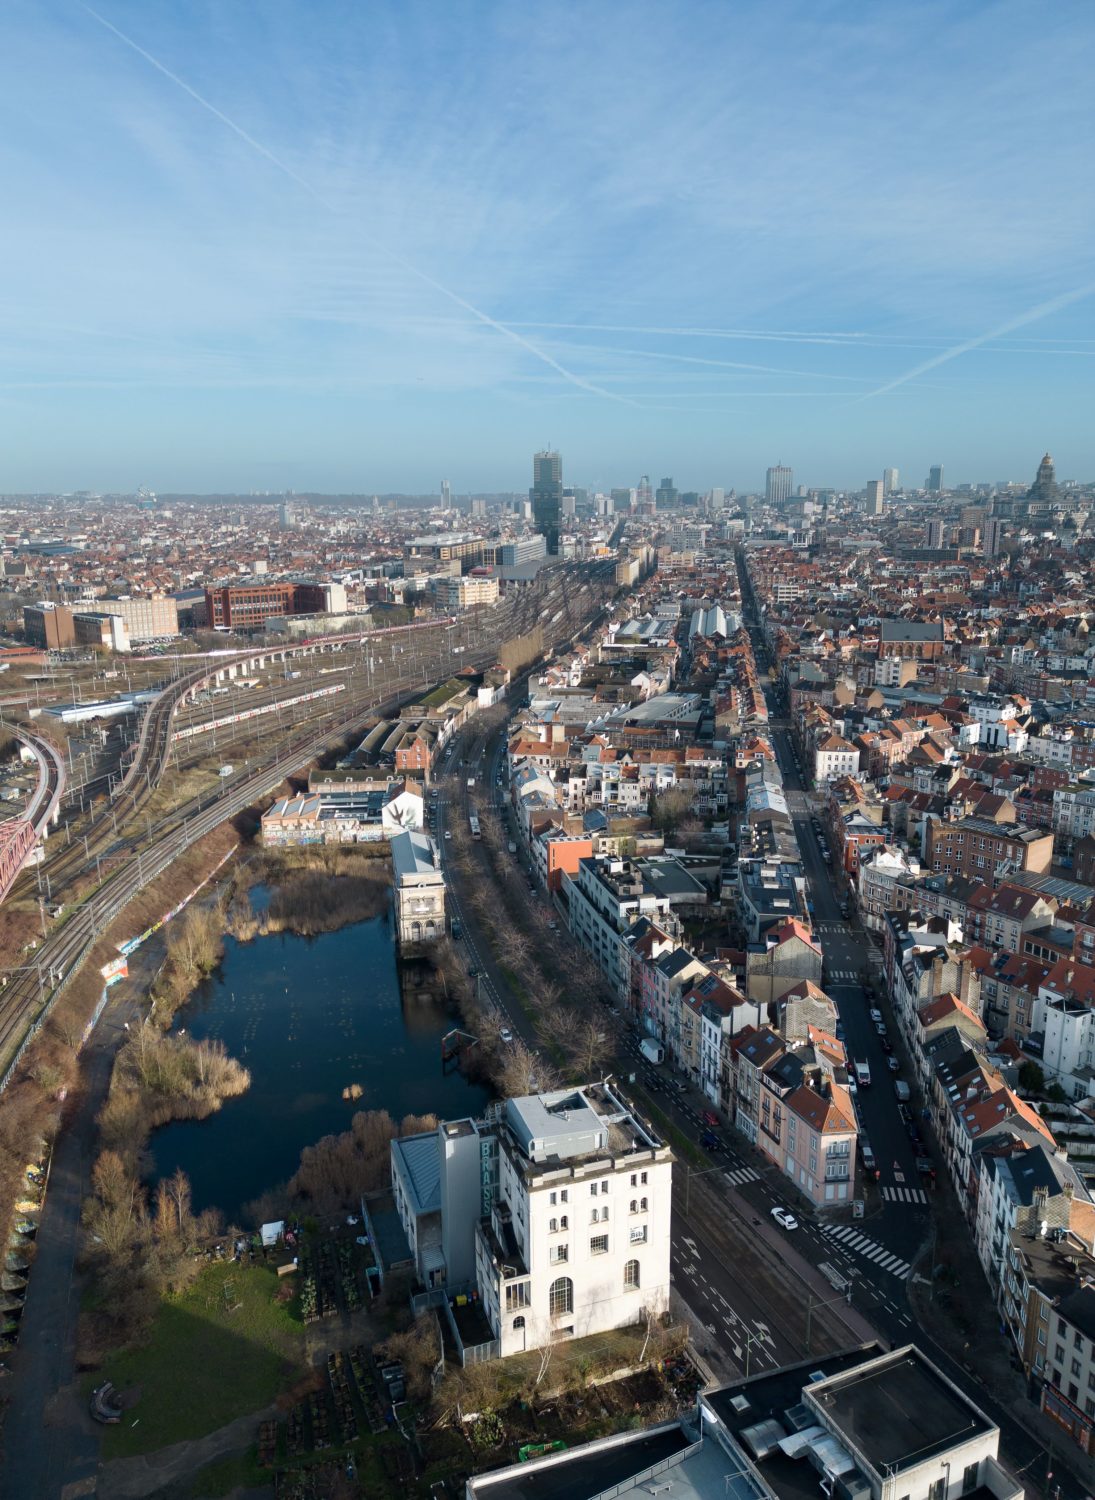 Réaménagement de la Place Rogier : 20 millions d'euros pour davantage de pollution